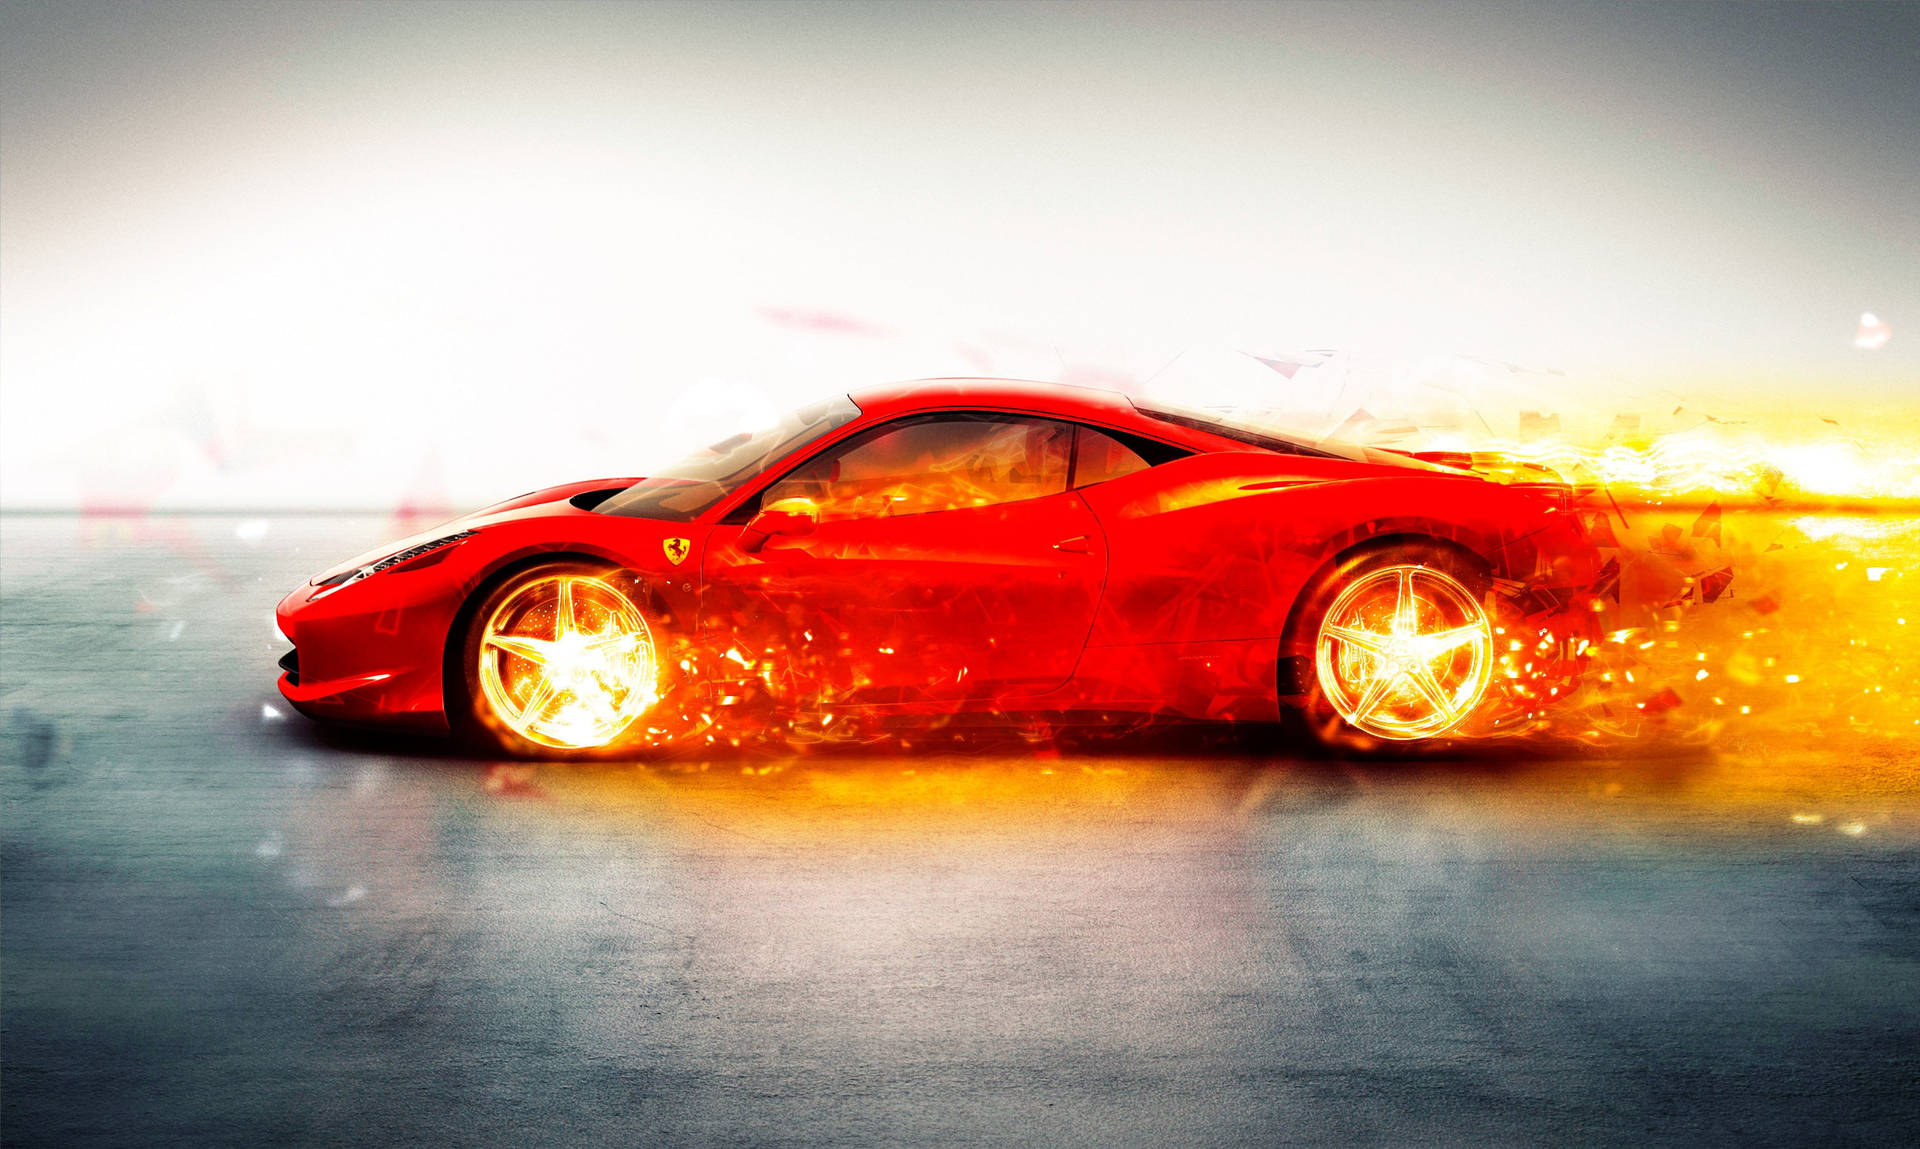 Red Fire Car Ferrari